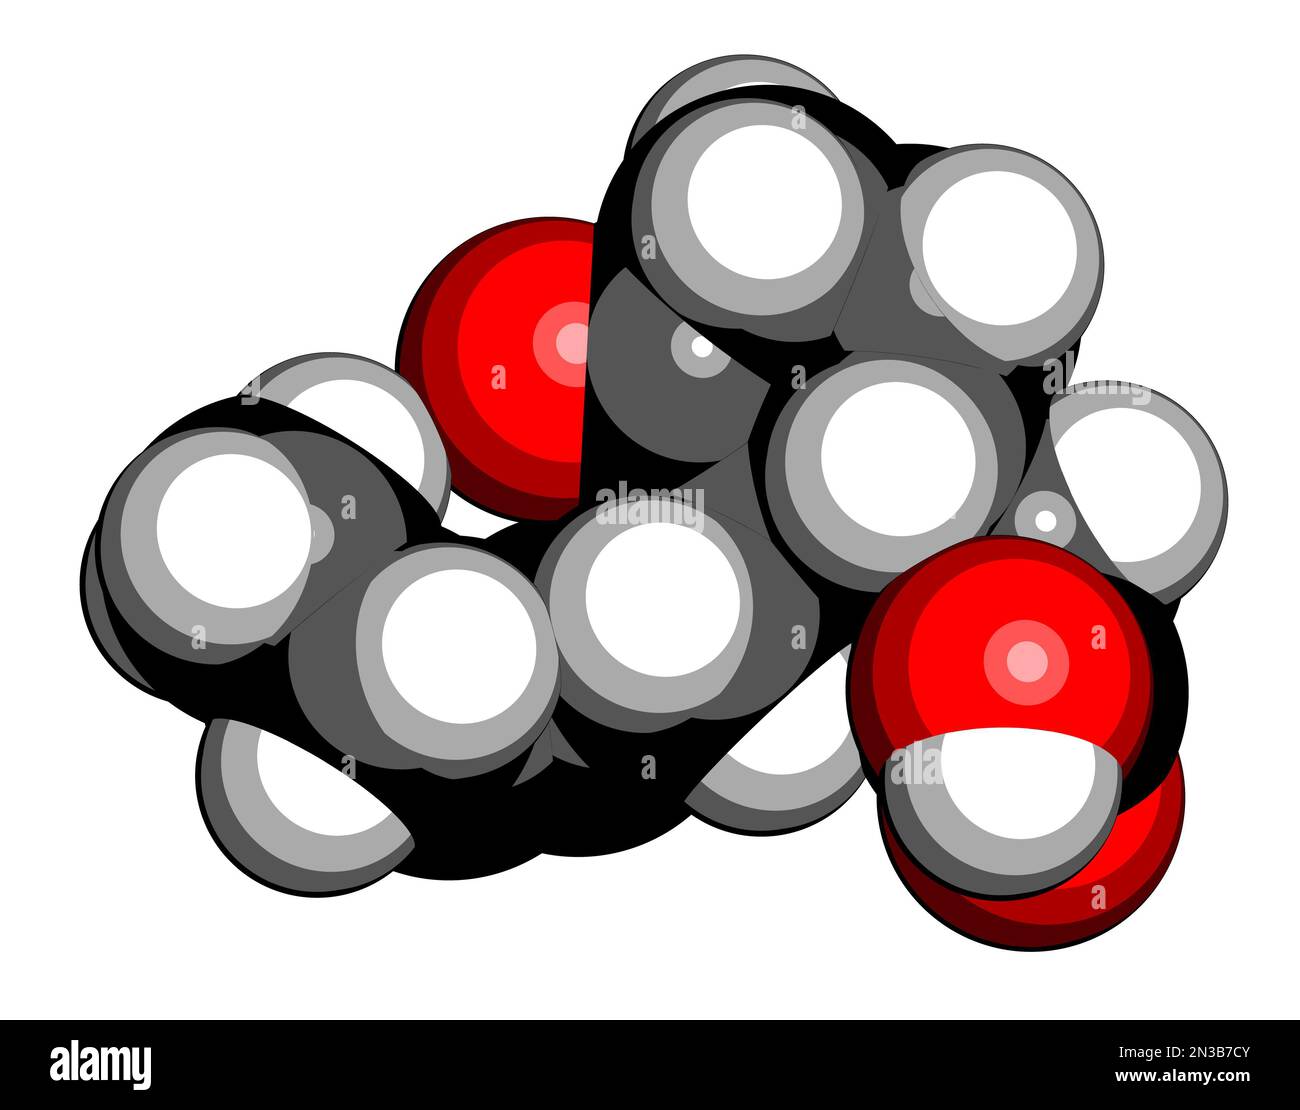 Molecola di ormone vegetale di acido jasmonico (jasmonato, JA). Rendering 3D. Gli atomi sono rappresentati come sfere con codifica a colori convenzionale: Idrogeno (bianco), Foto Stock